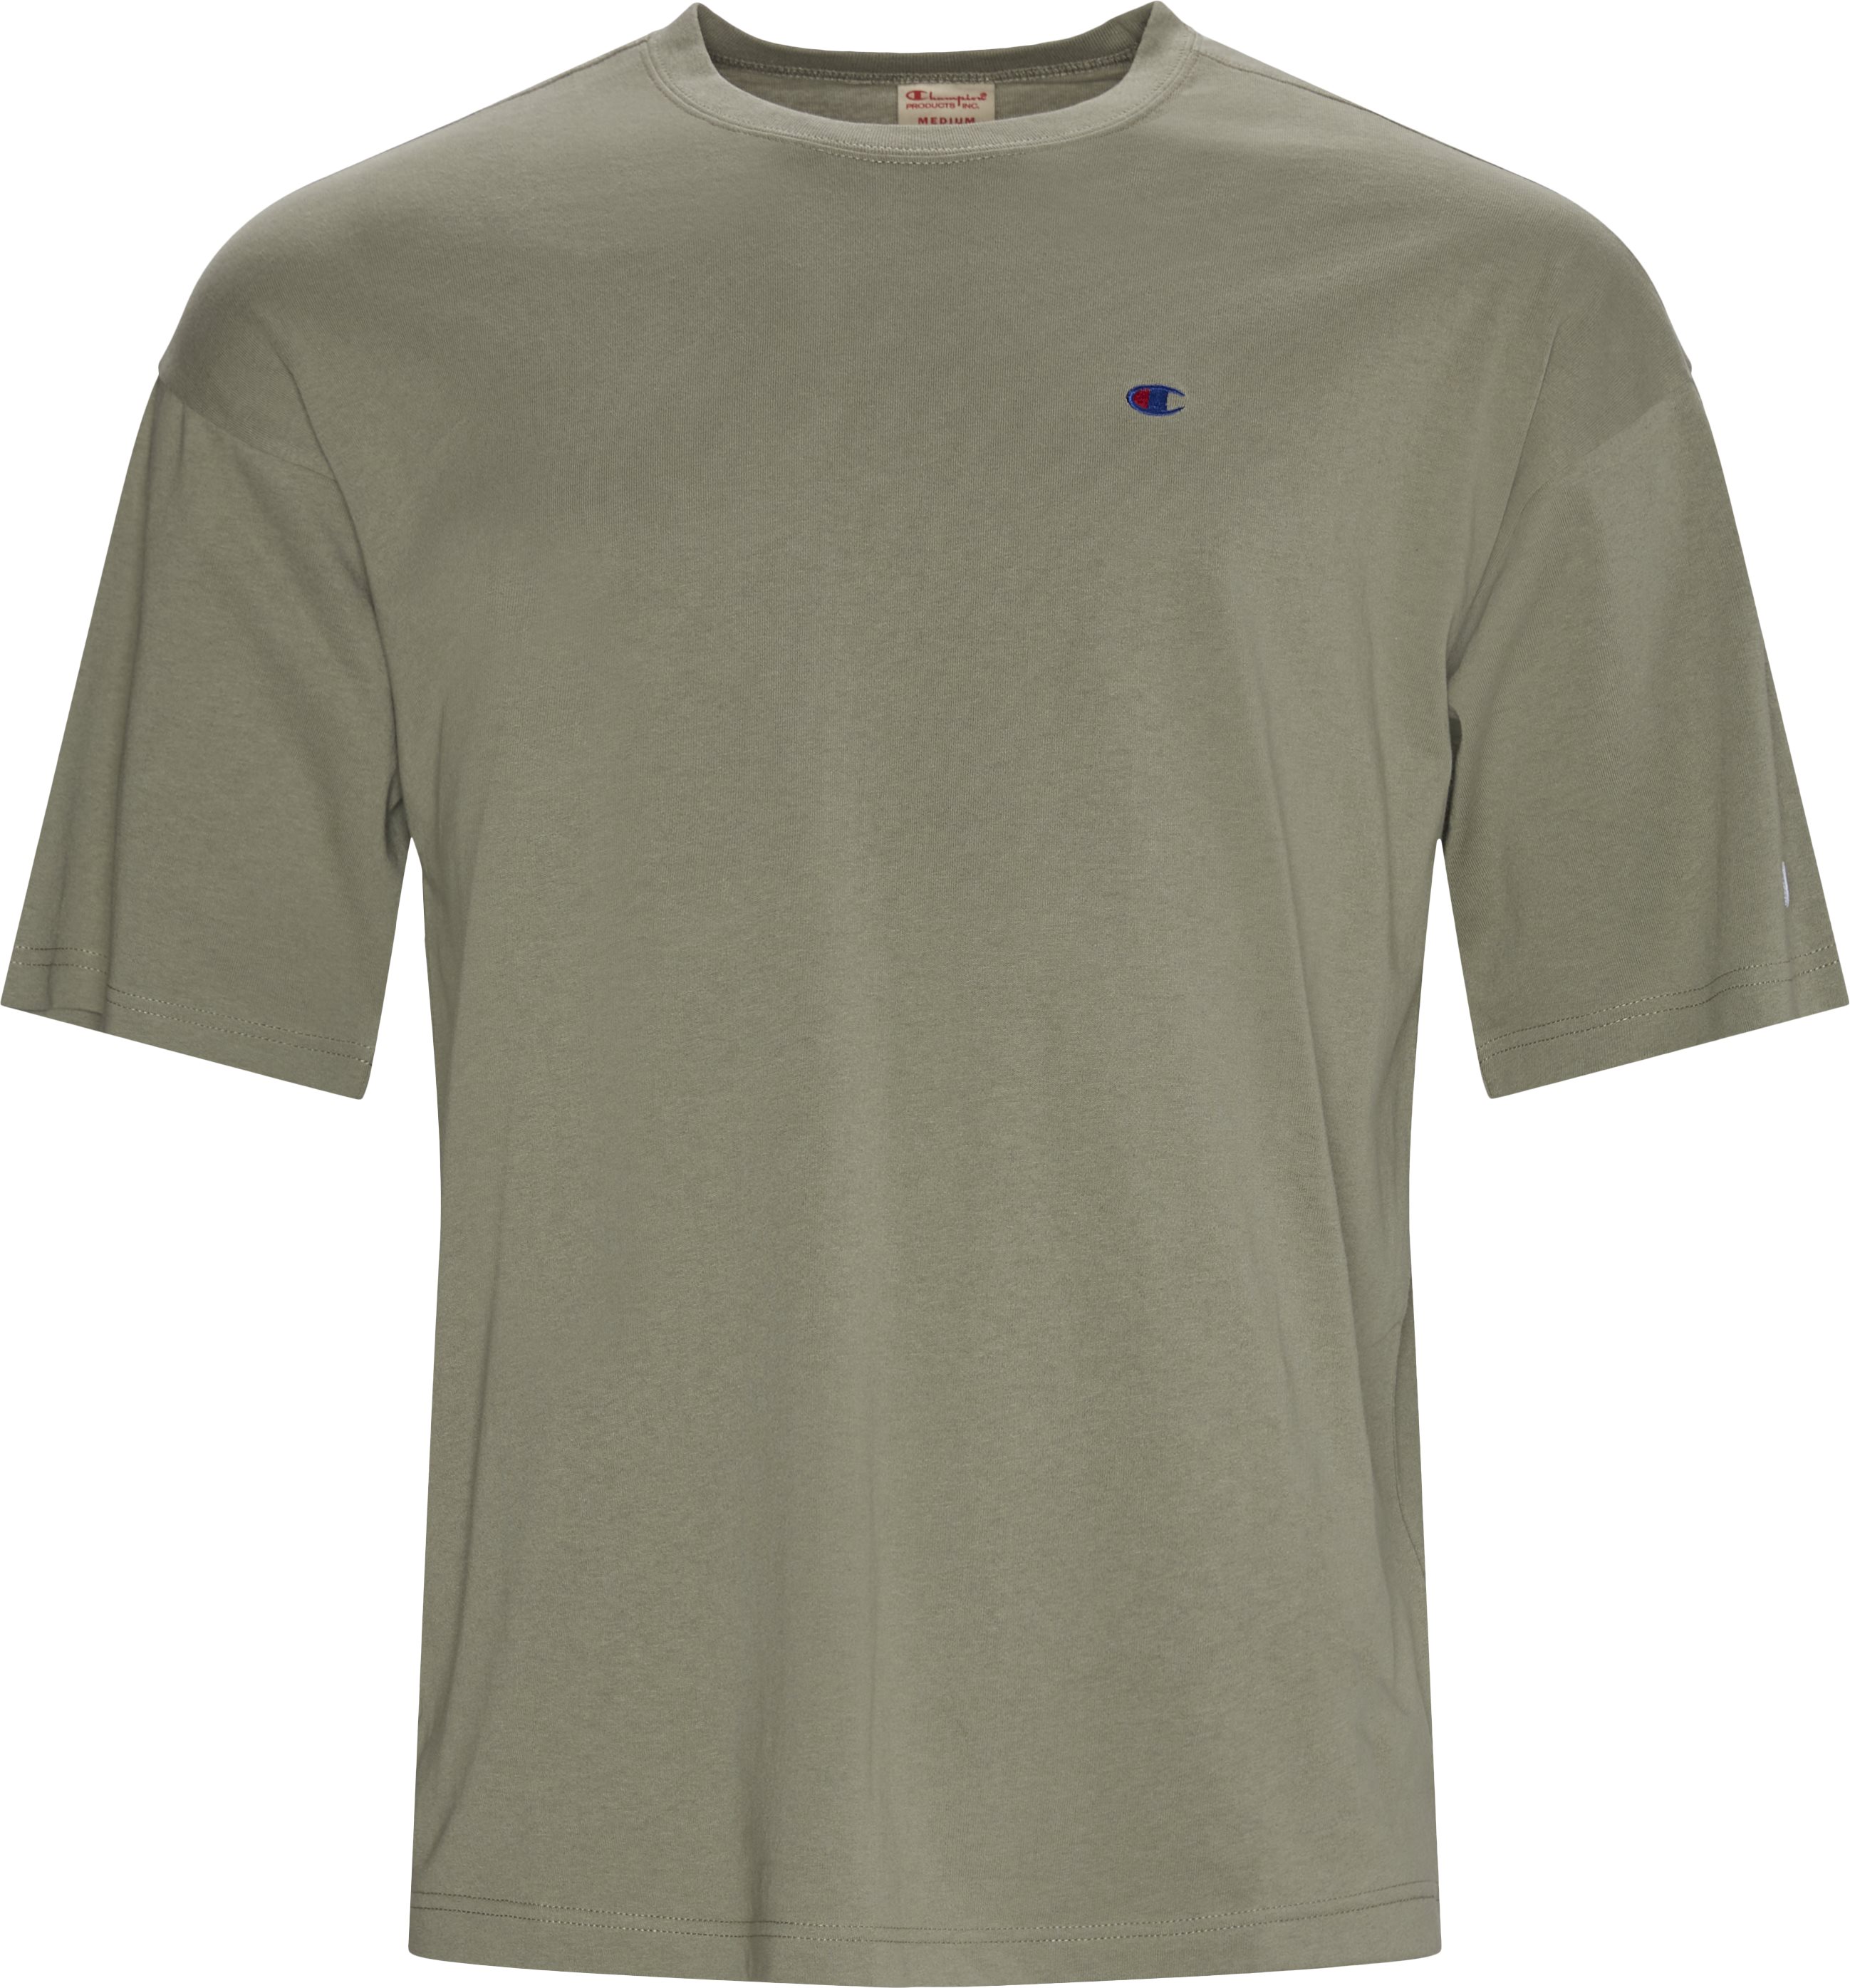 SHAPE Tee - T-shirts - Regular fit - Grön